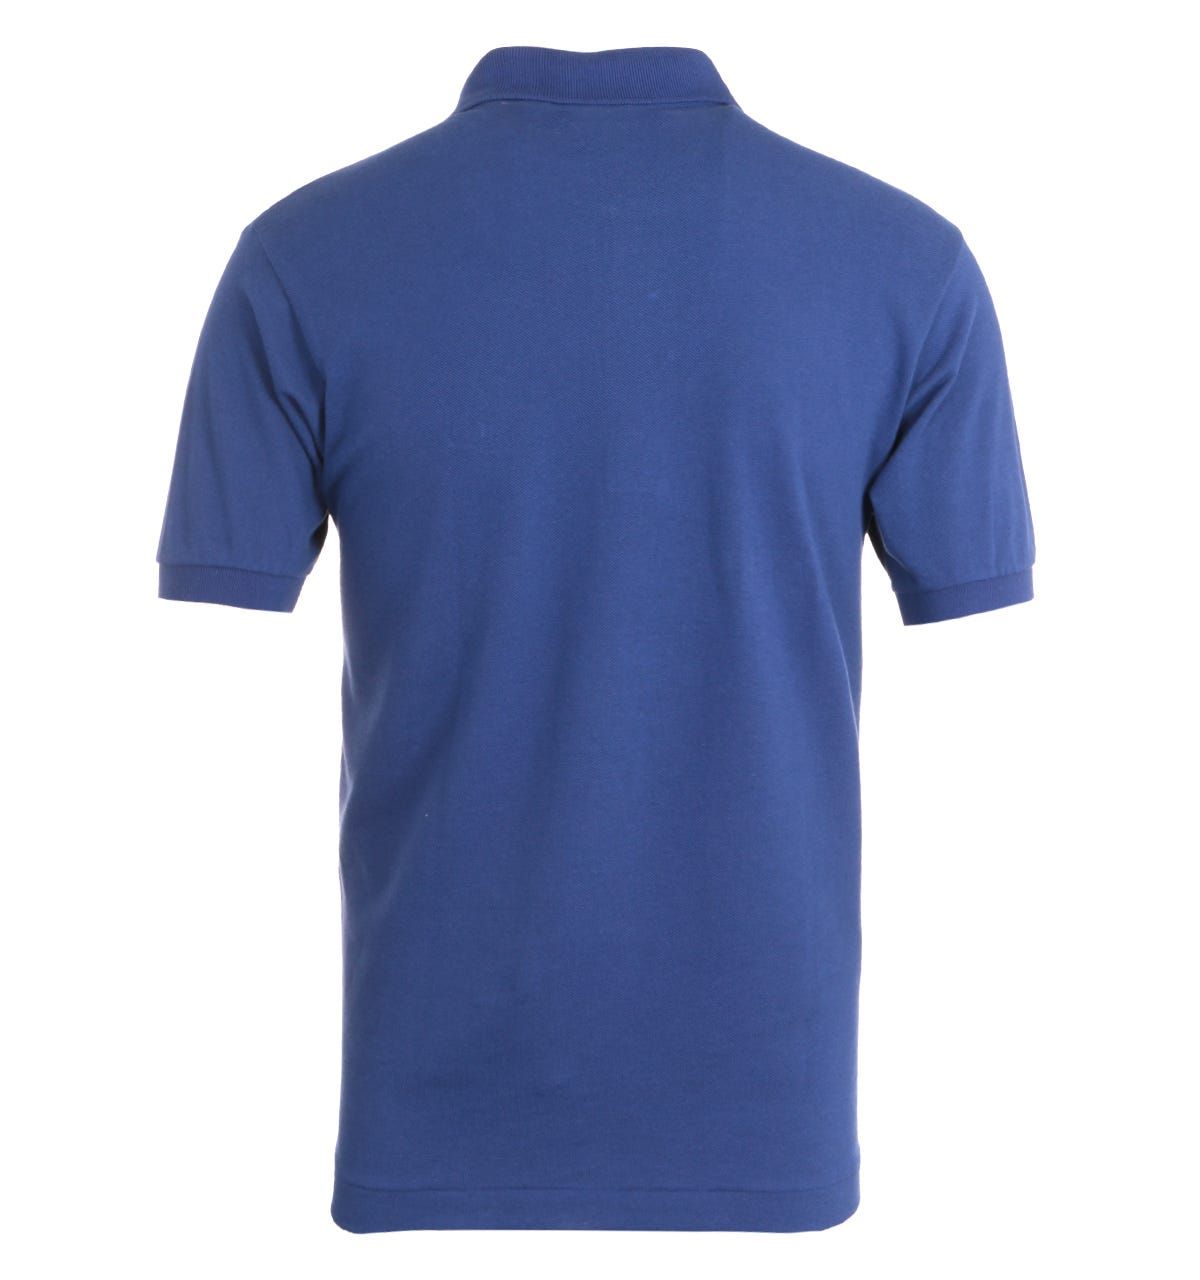 Lacoste Classic Fit Cobalt Blue Polo Shirt